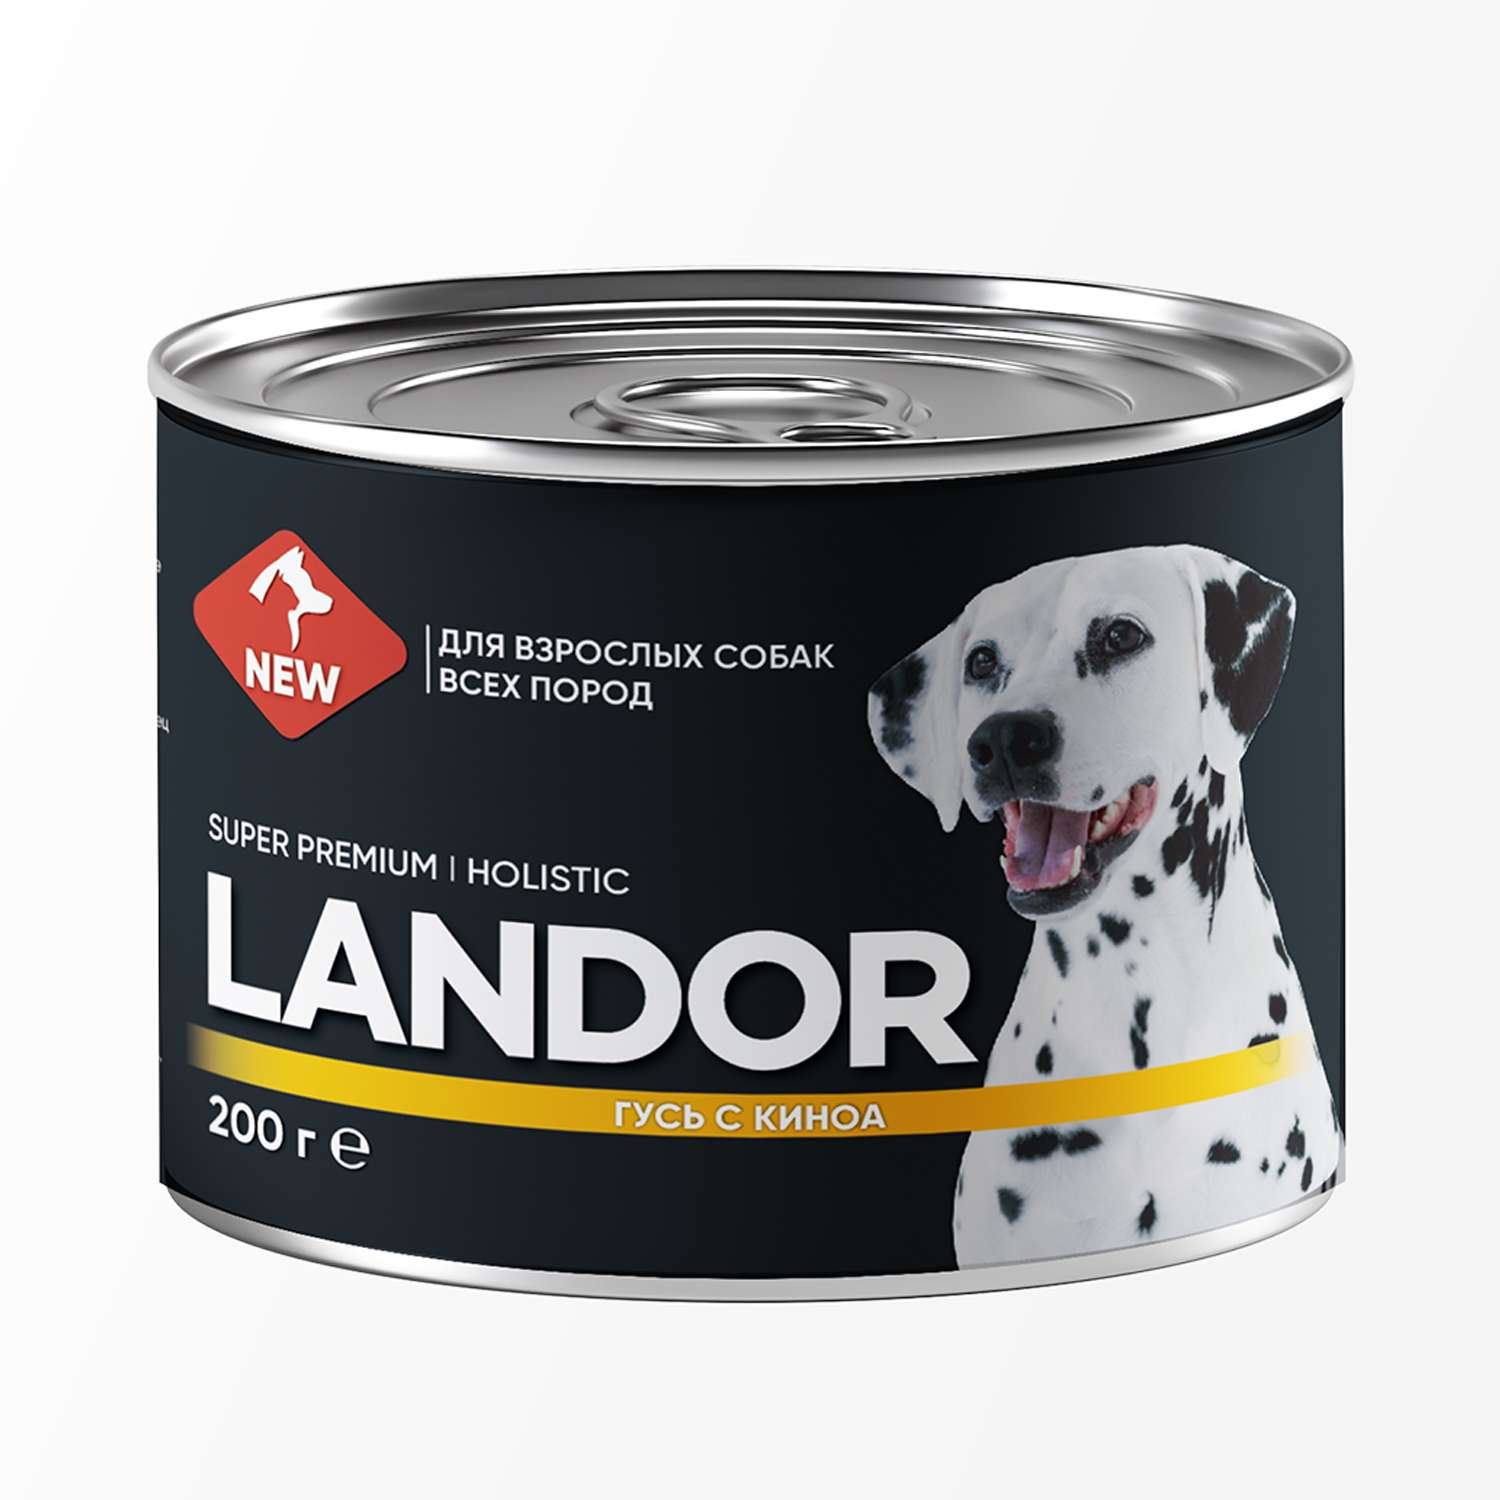 Корм для собак Landor 0.2кг всех пород гусь с киноа ж/б - фото 1